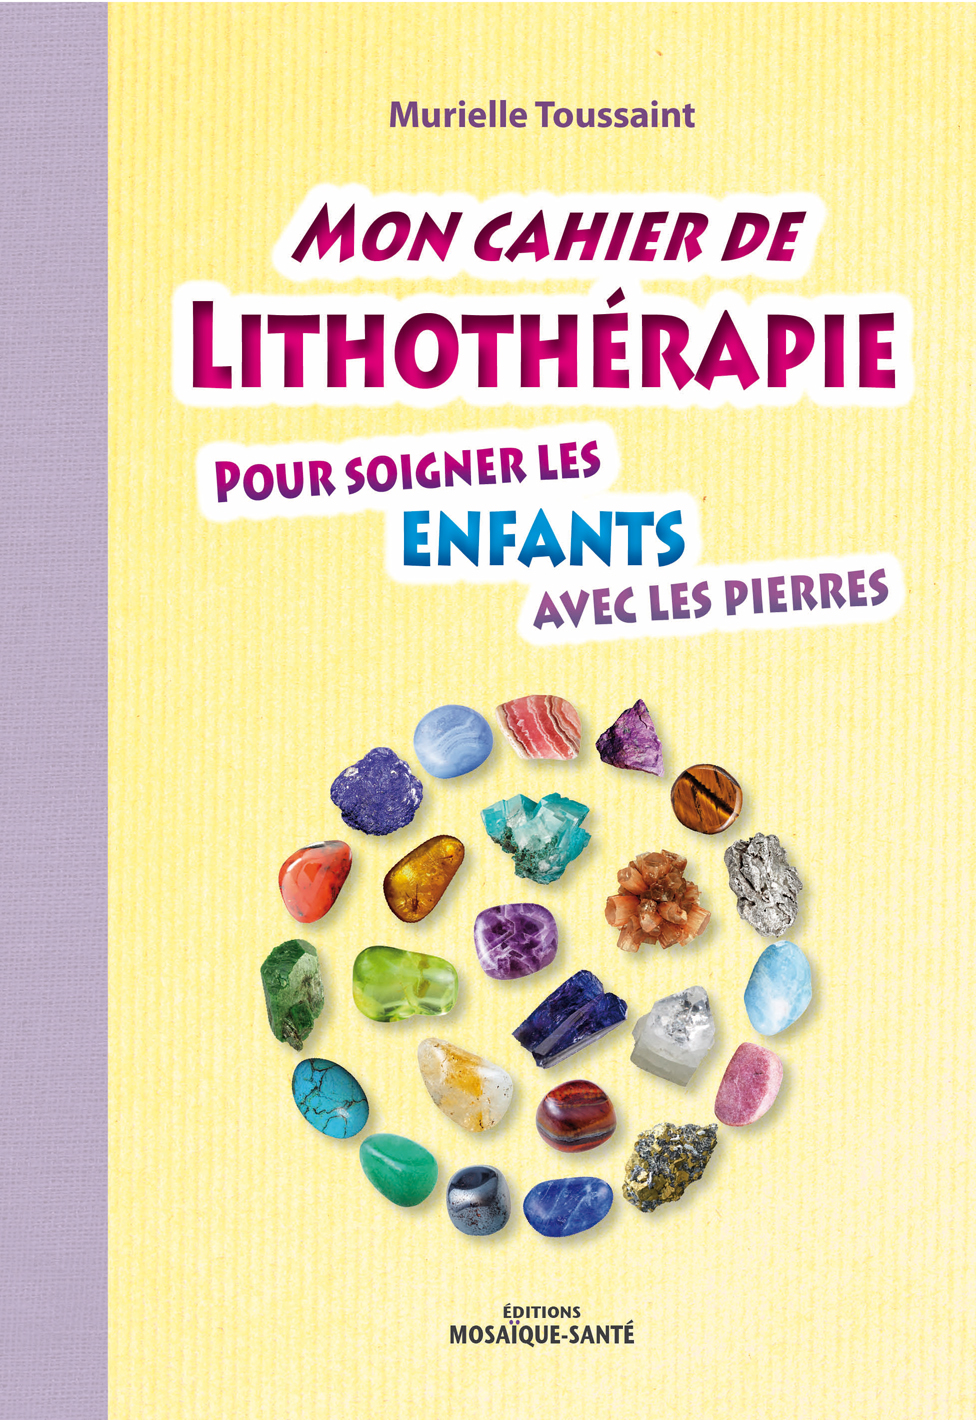 Mon cahier de Lithothérapie - Pour soigner les enfants avec les pierres - Murielle Toussaint